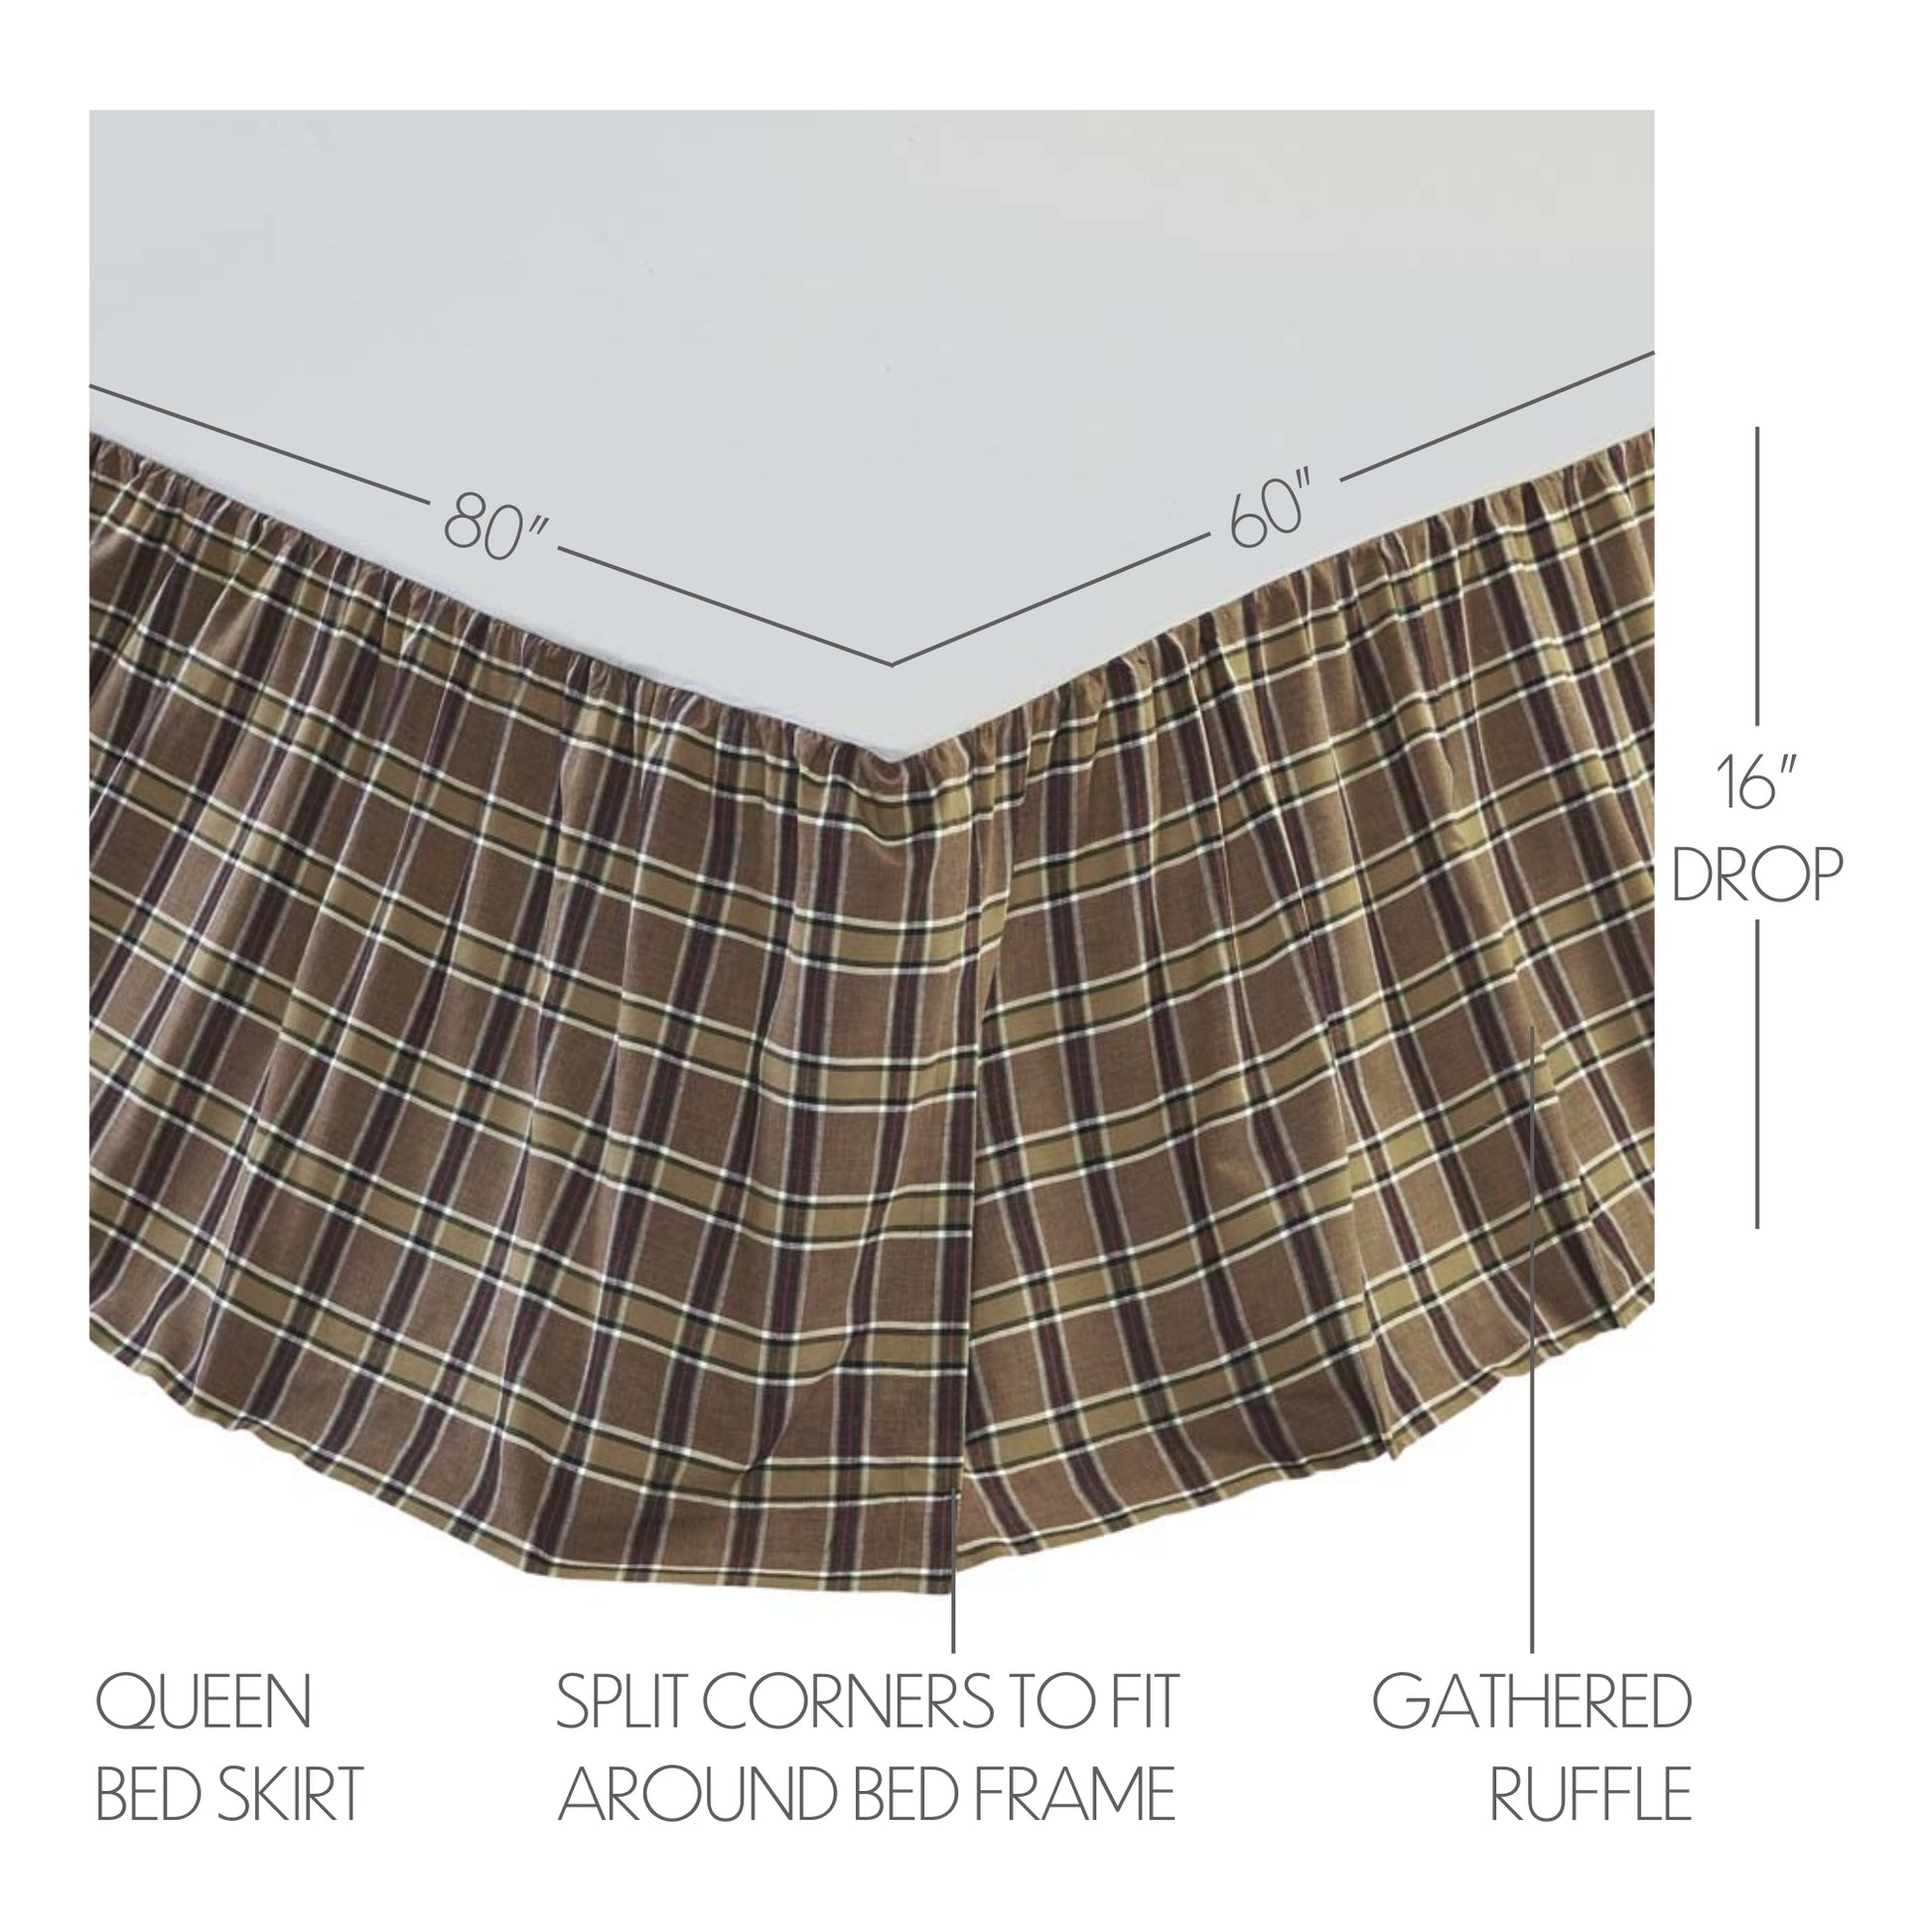 38082-Wyatt-Queen-Bed-Skirt-60x80x16-image-1